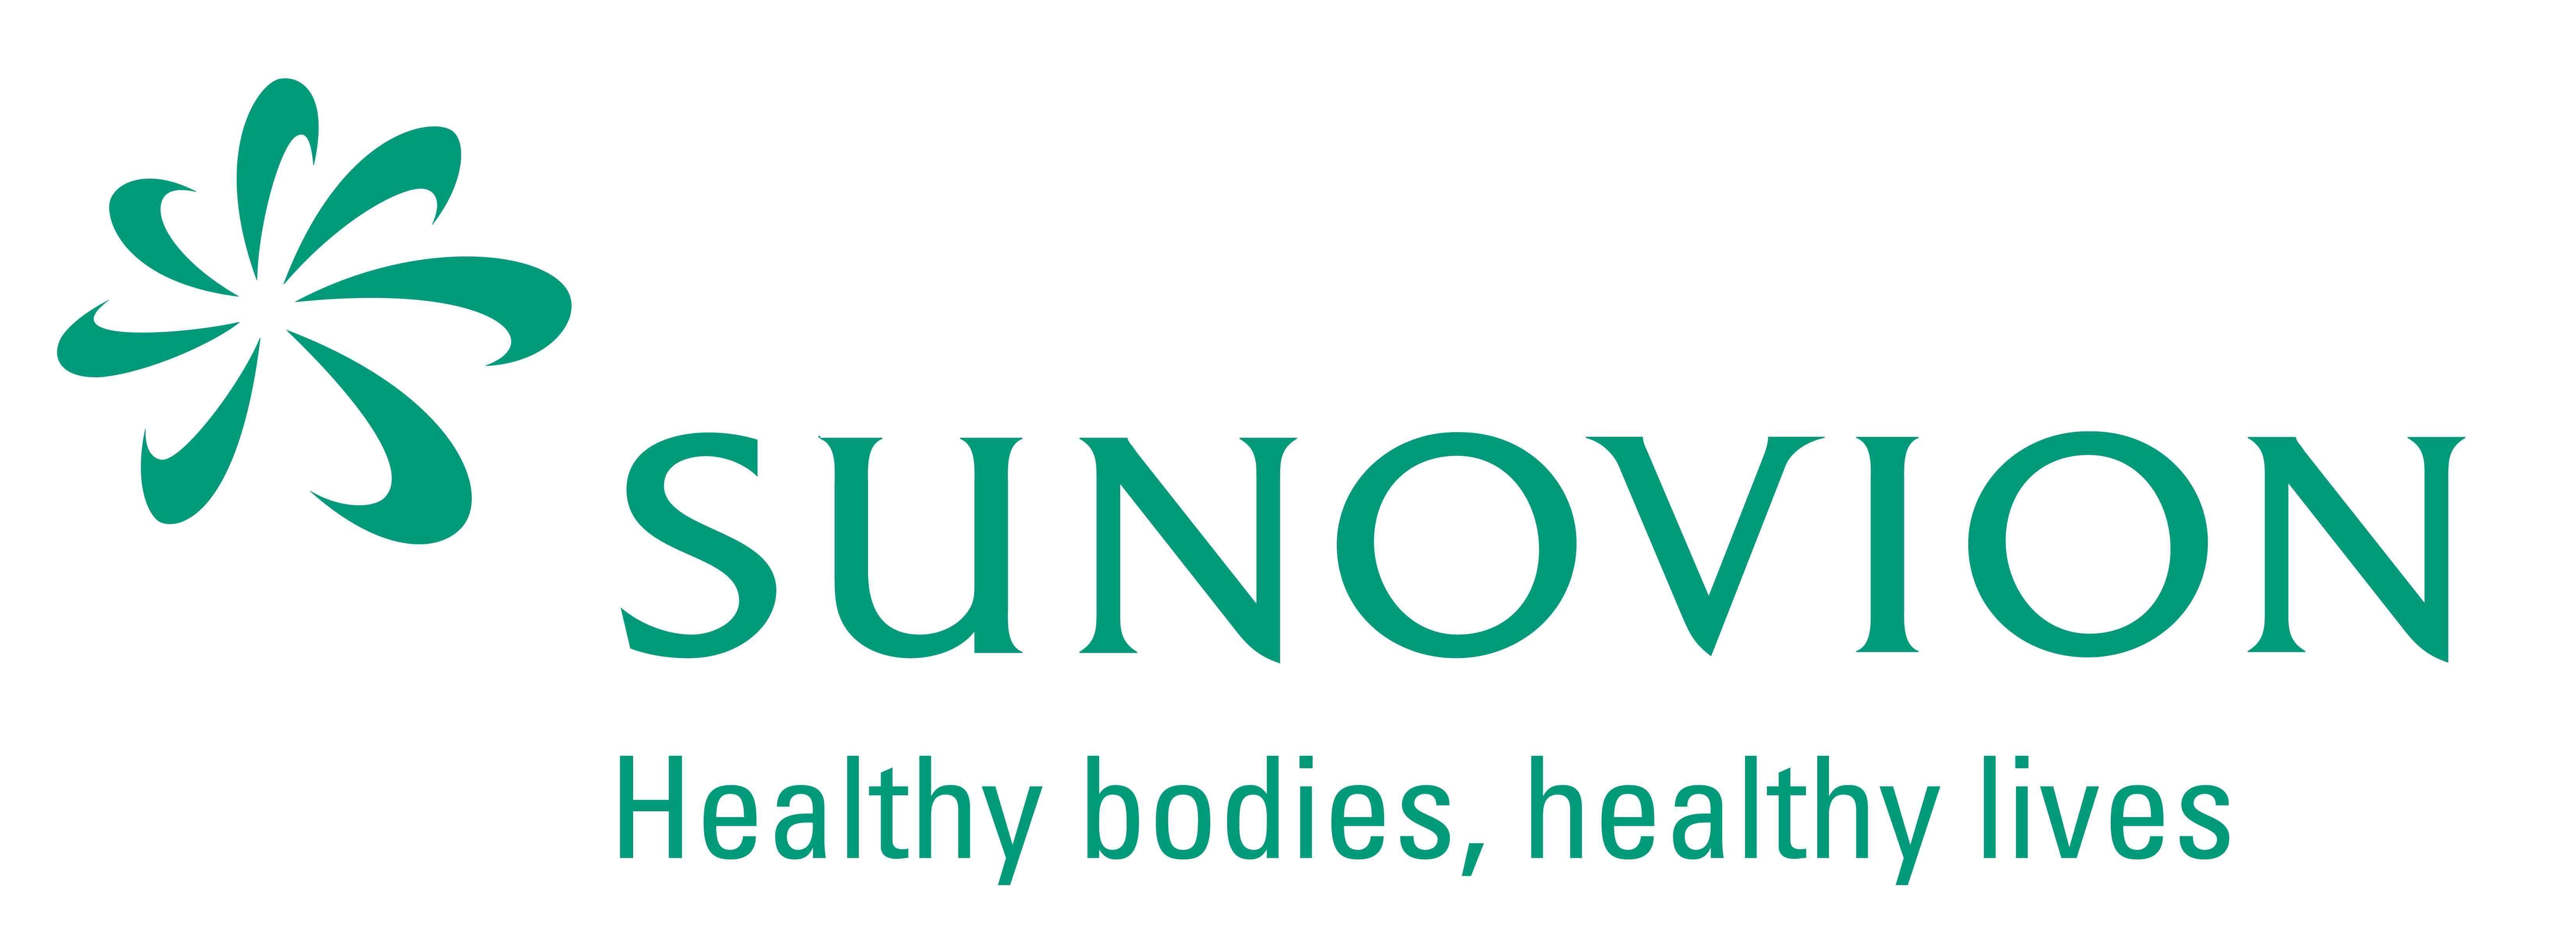 Sunovion Logo - Sunovion Logo - National Council